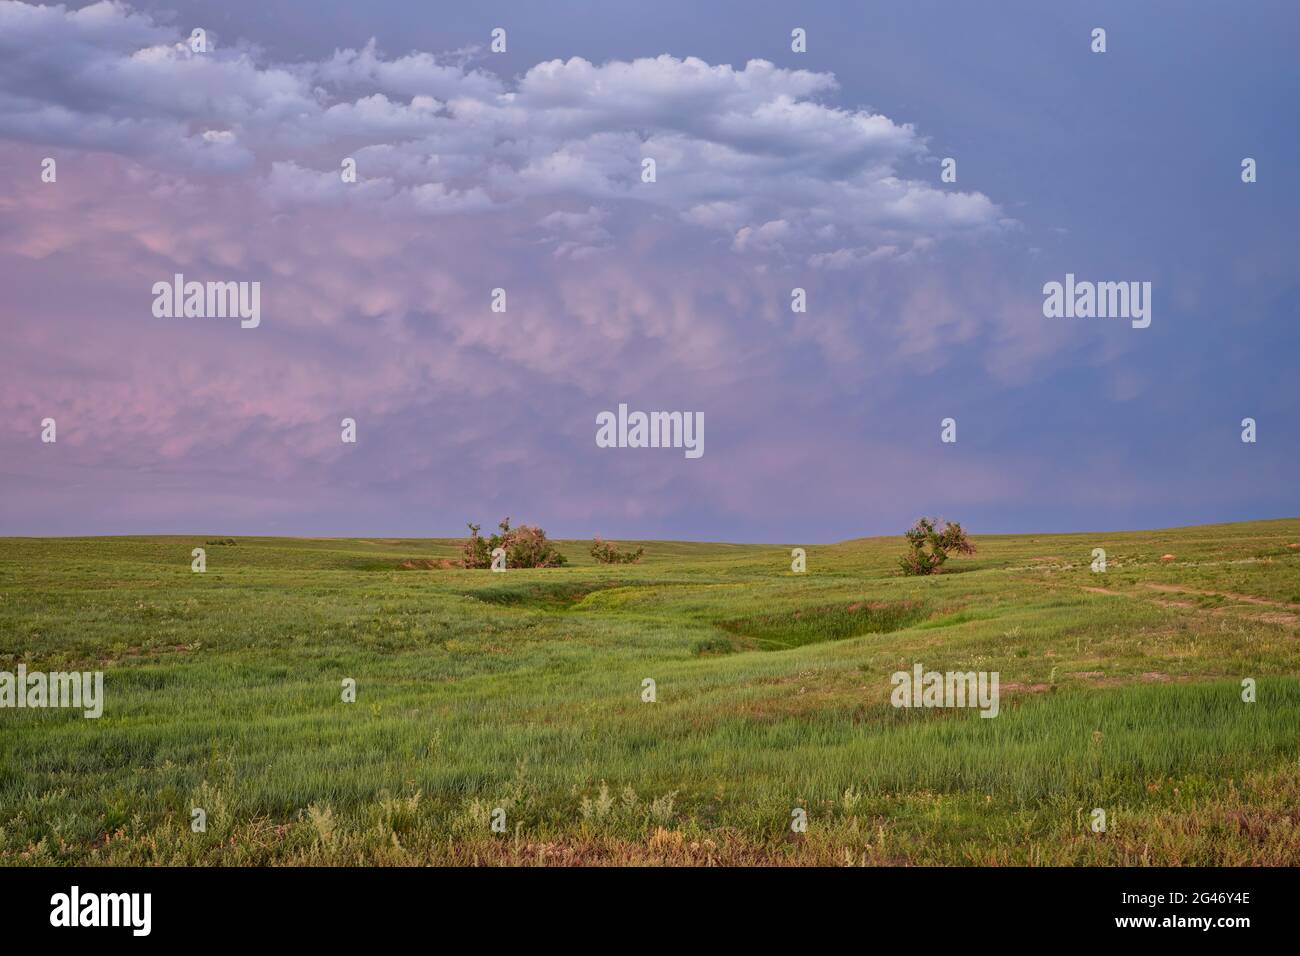 Abenddämmerung über grüner Prärie mit einsamen Bäumen entlang eines saisonalen Baches - Pawnee National Grassland in Colorado, Landschaft im späten Frühling oder Frühsommer Stockfoto